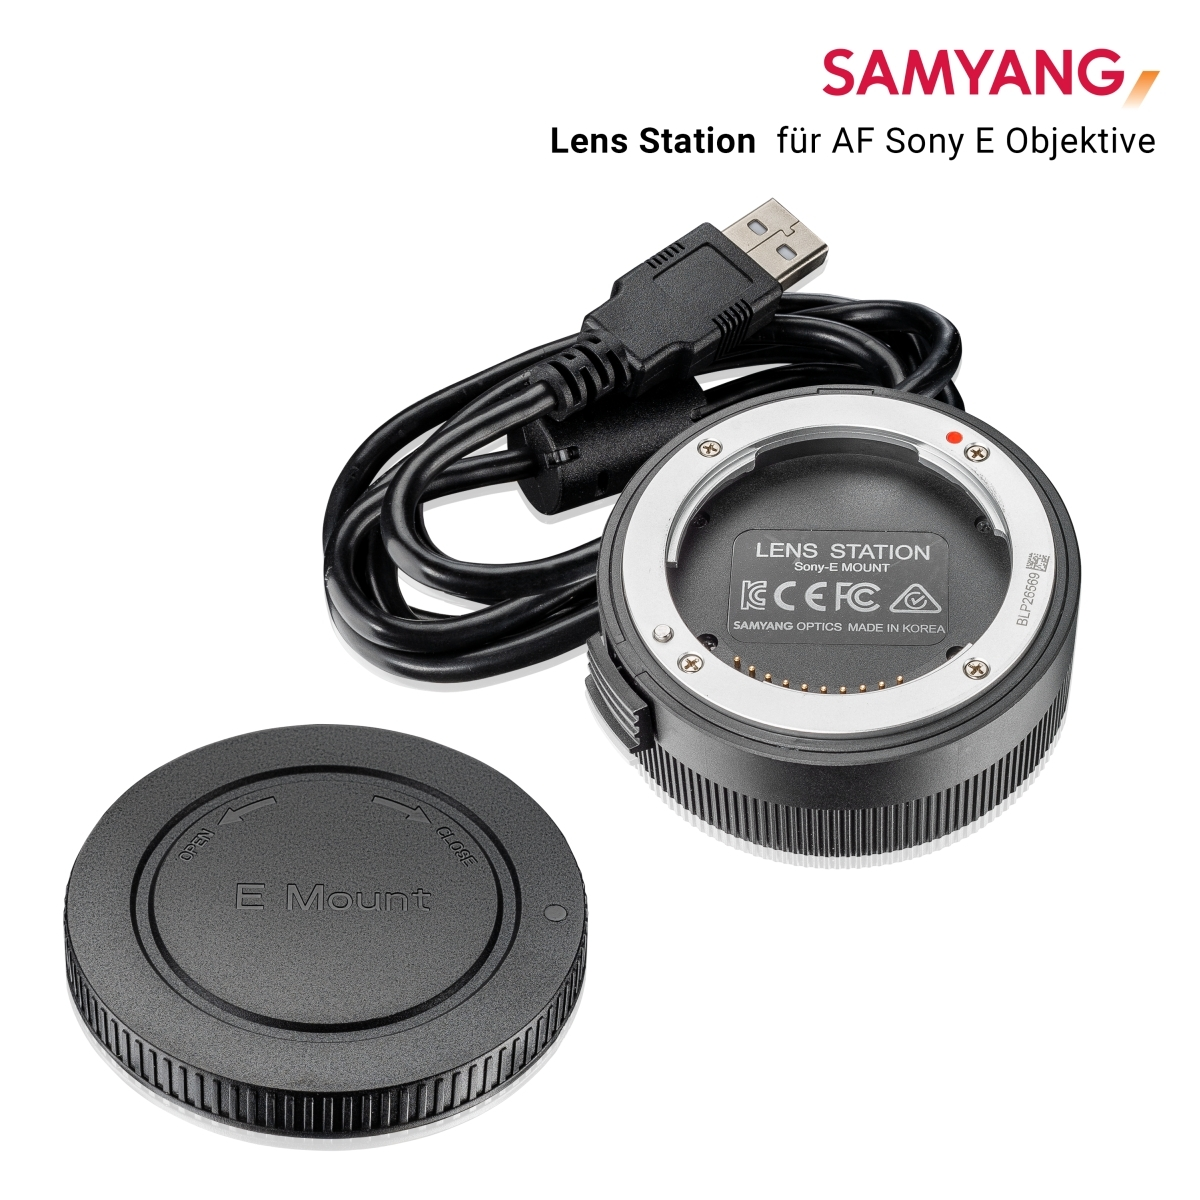 für AF 0 schwarz E-Mount, für Sony weiß) / Lens millimetres Manager Sony E SAMYANG (Lens Station